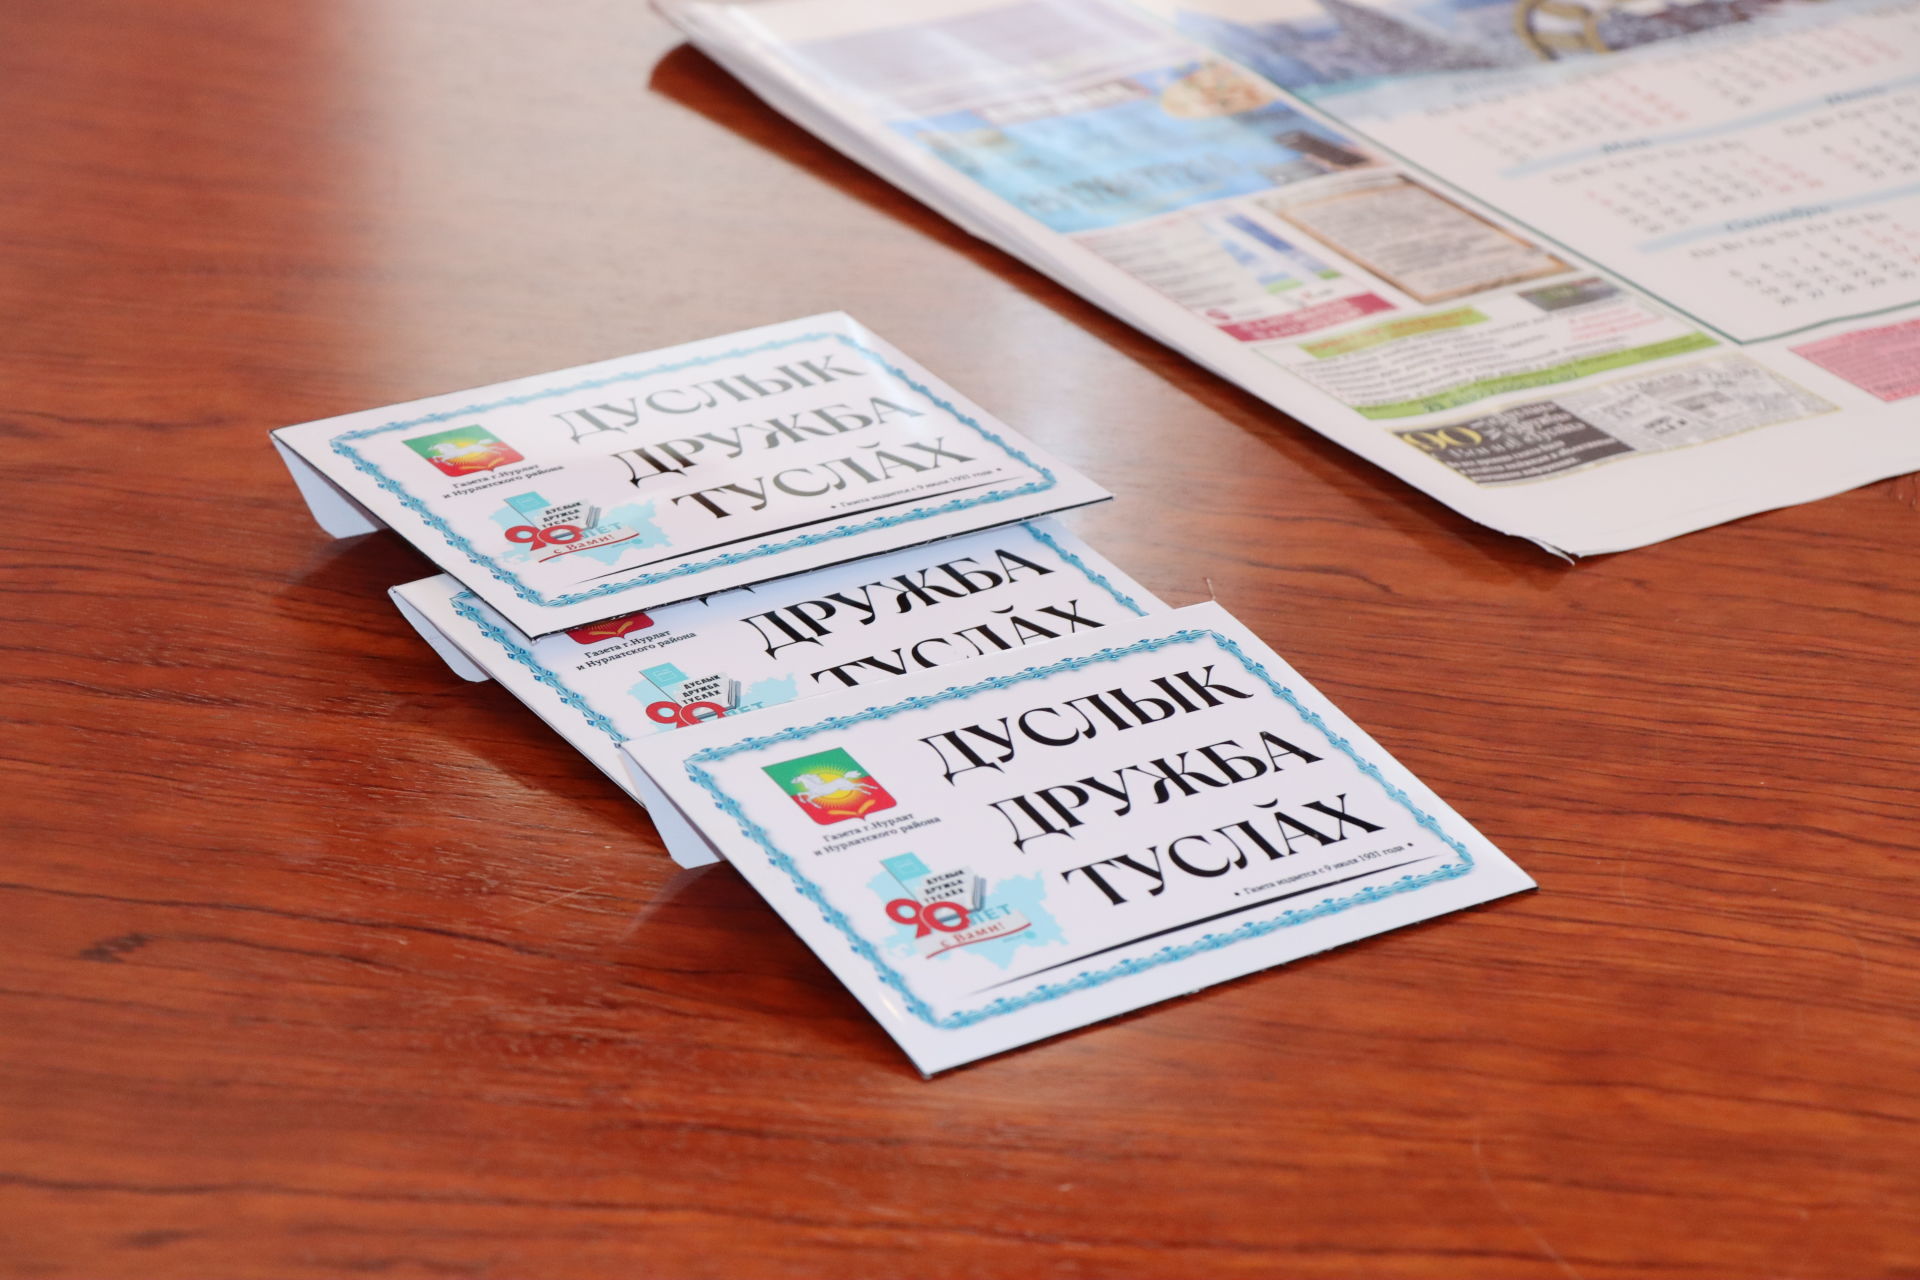 Глава района Алмаз Ахметшин подарил нурлатцам подписку на районную газету